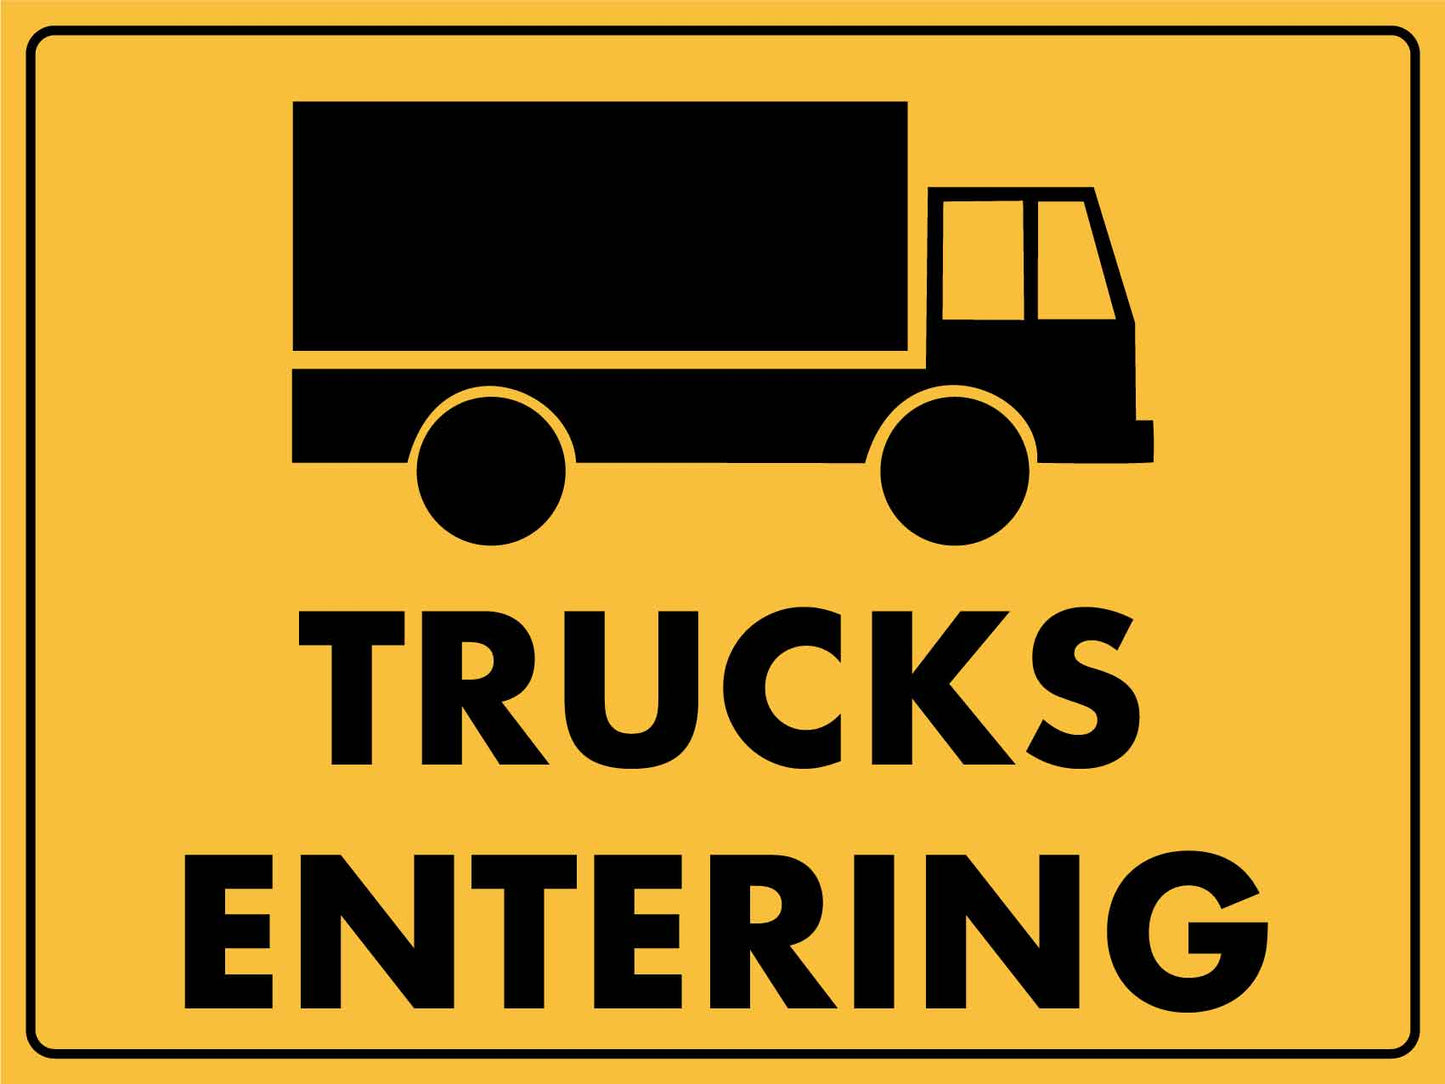 Trucks Entering Image Sign